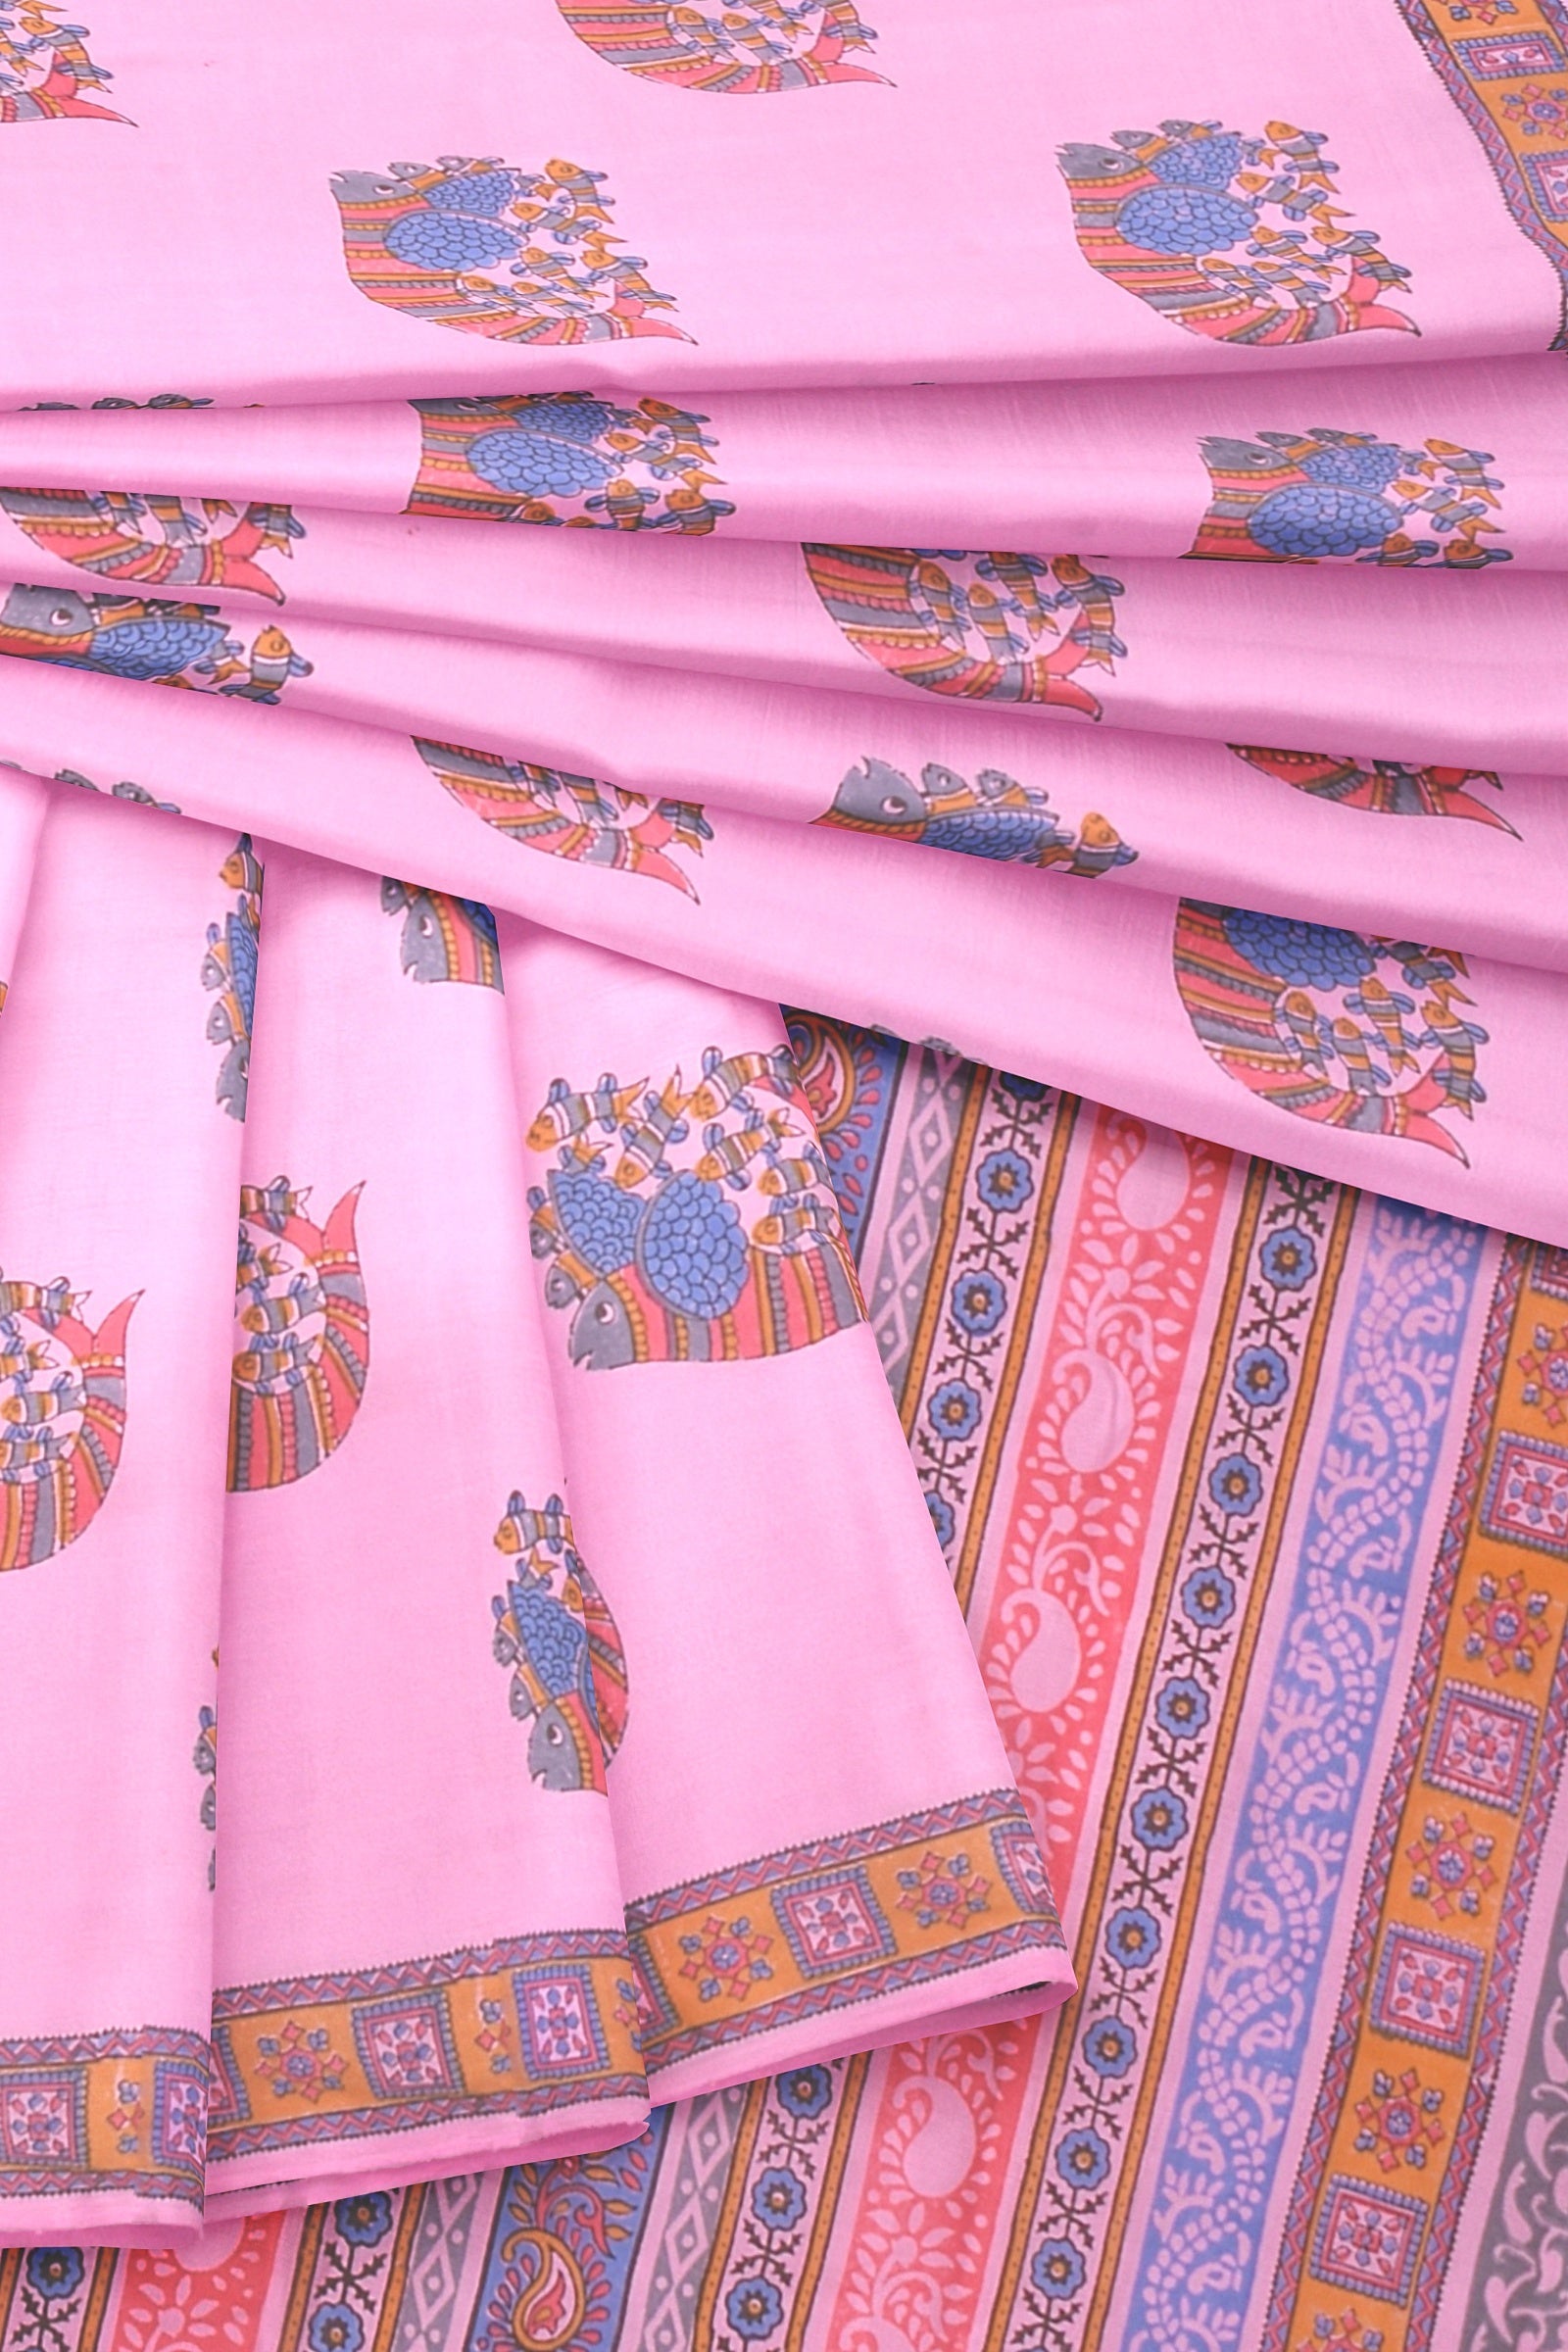 Chhipa Hand Block Printed Baby Pink Color Malmal Cotton Saree With Multicolor Gond Fish Motif SKU-AS10034 - Bhartiya Shilp